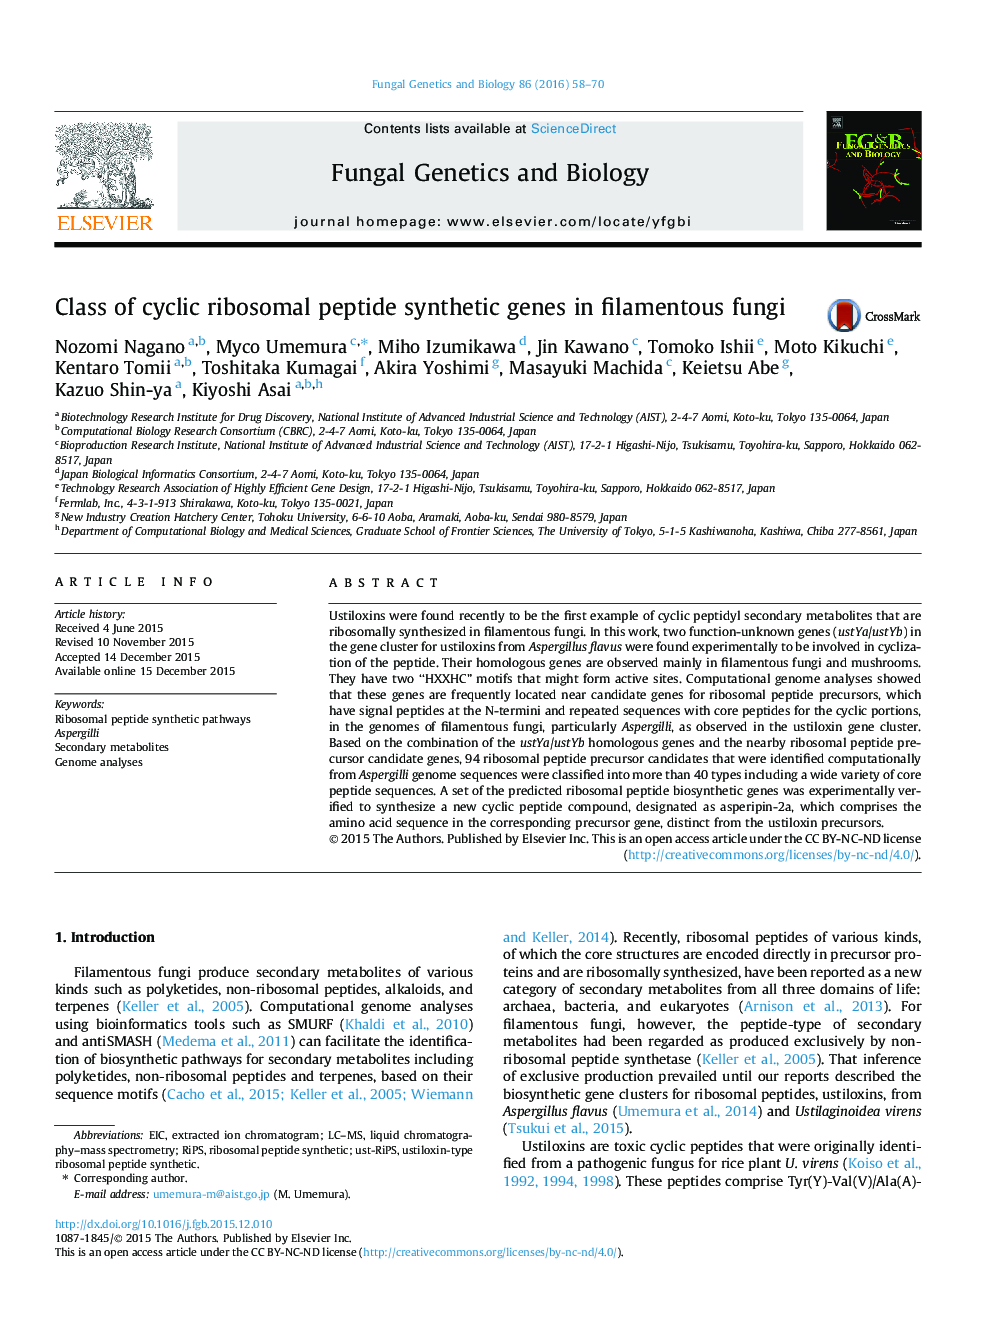 کلاس ژنهای ترکیبی پپتید ریبوزومی سیکلی در قارچهای رشته ای 